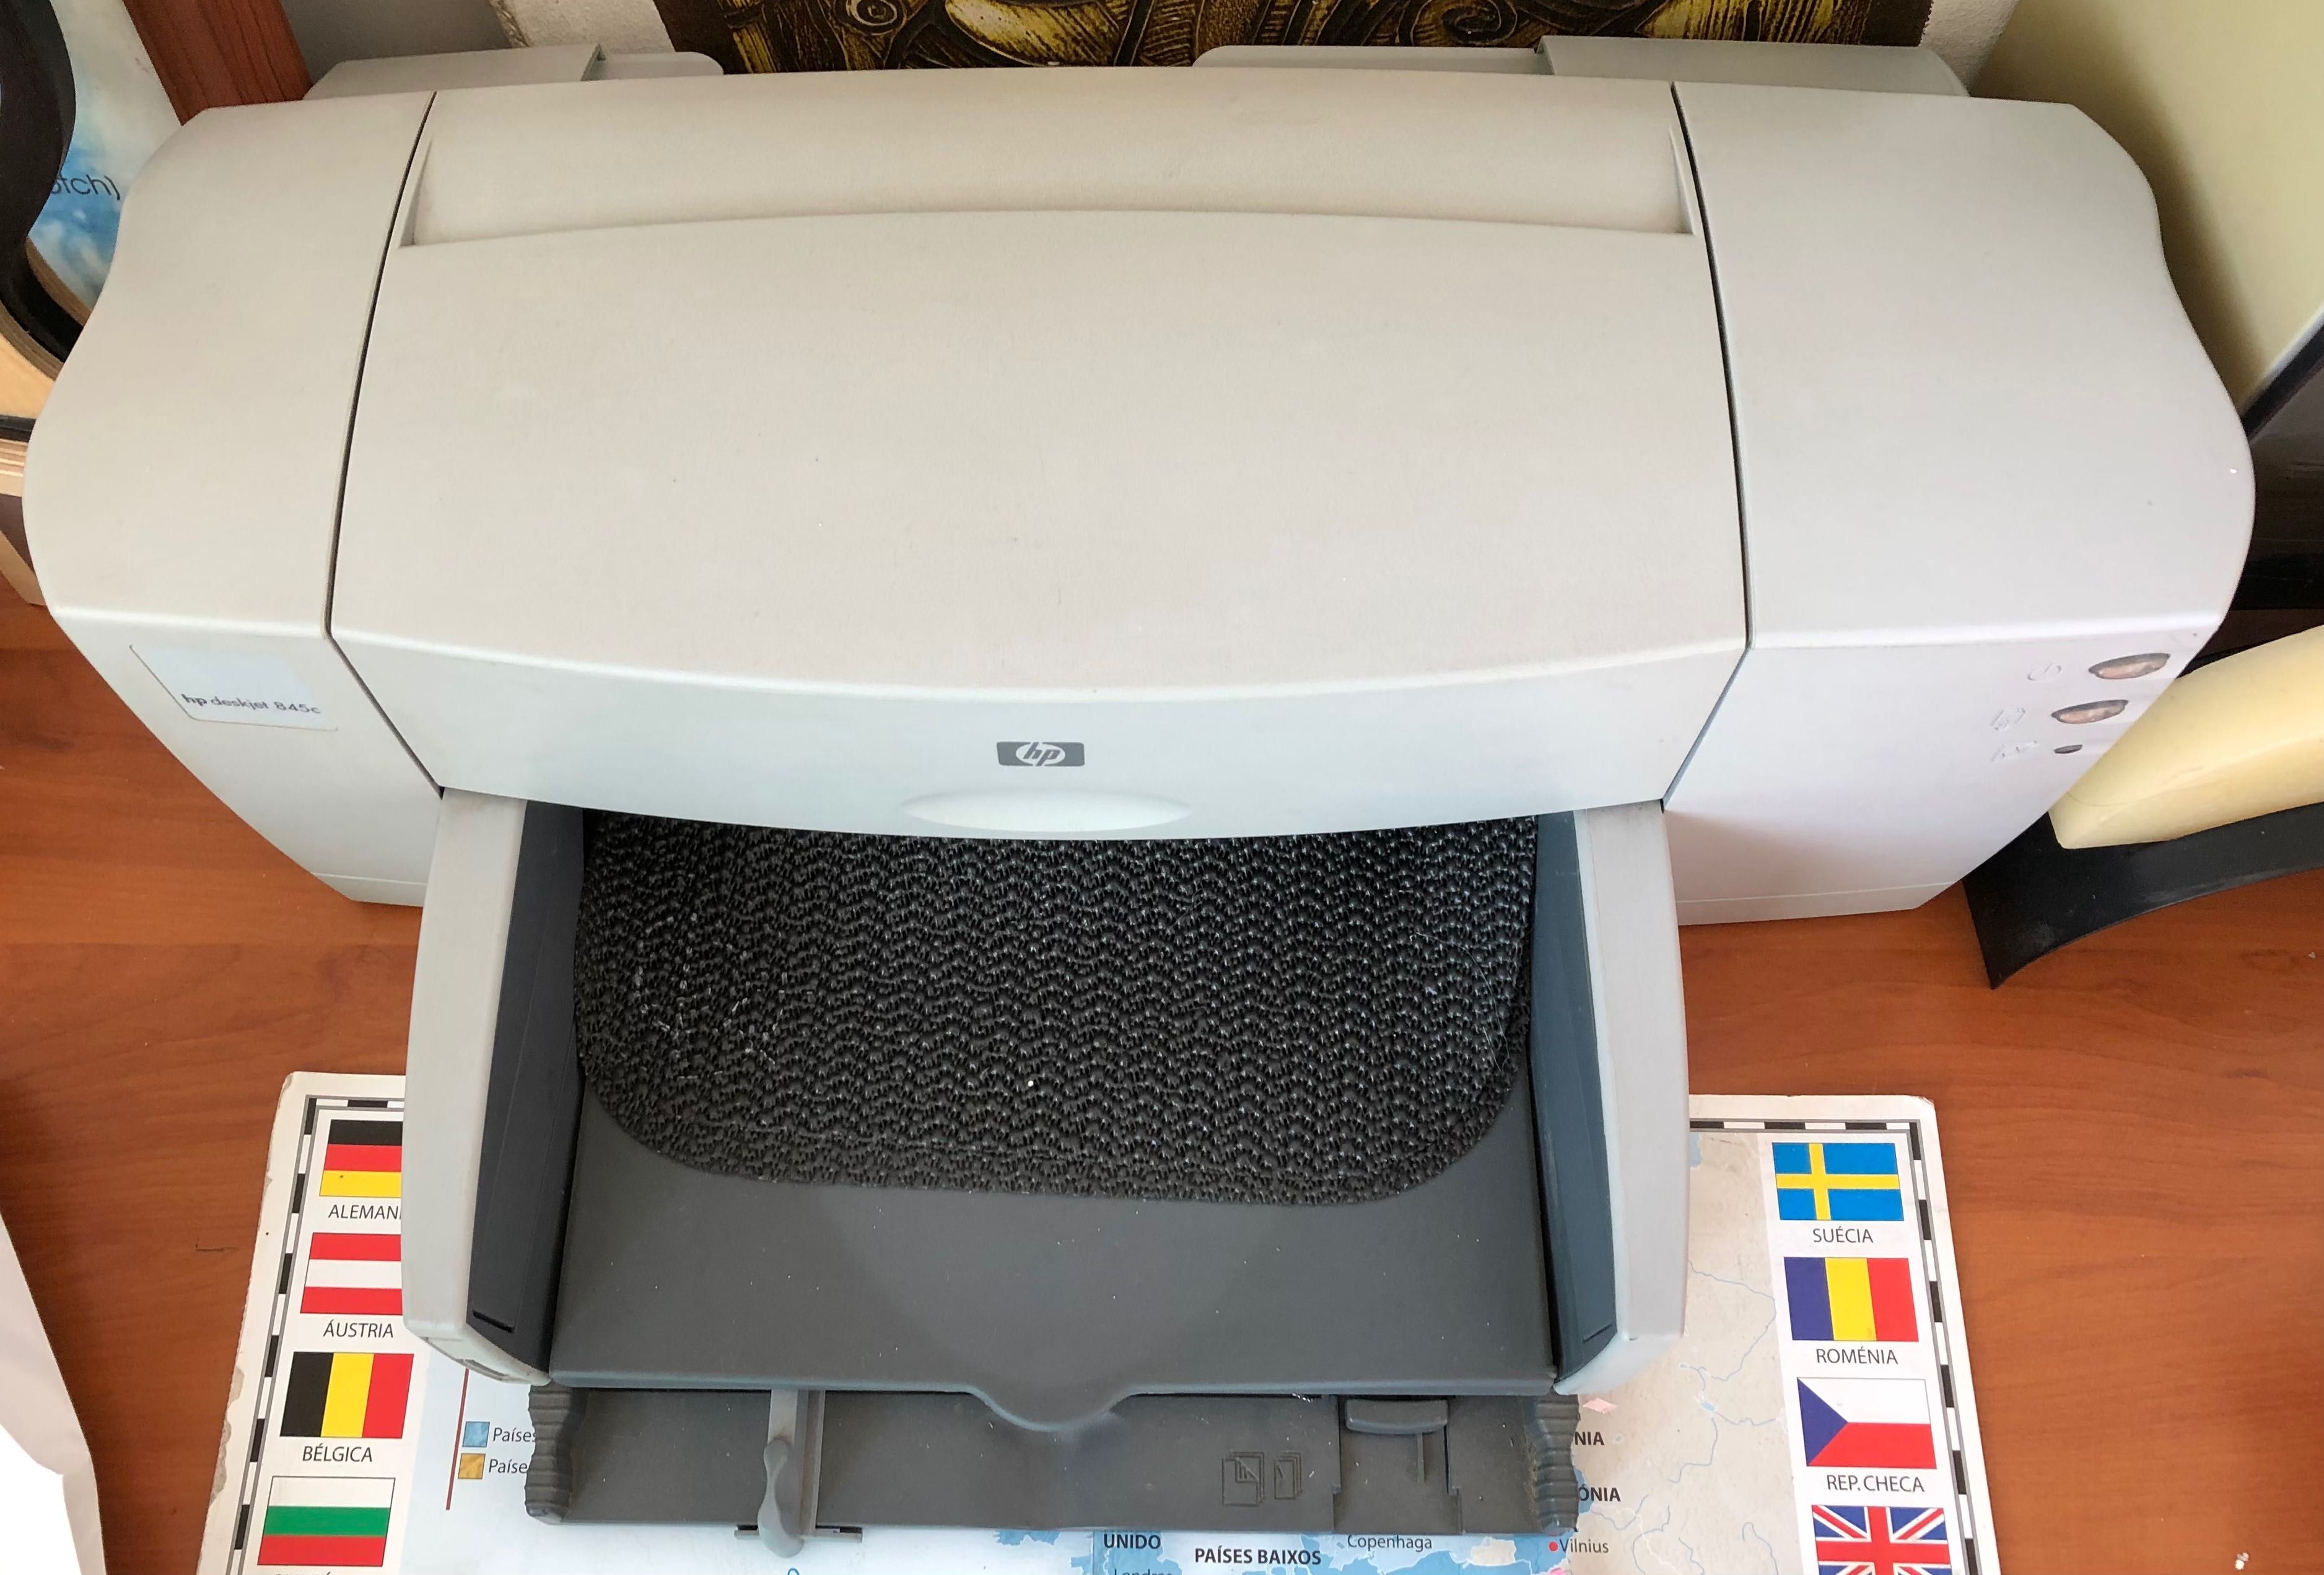 HP deskjet 845c printer inkjet printer Colour + HD scanner 2200C